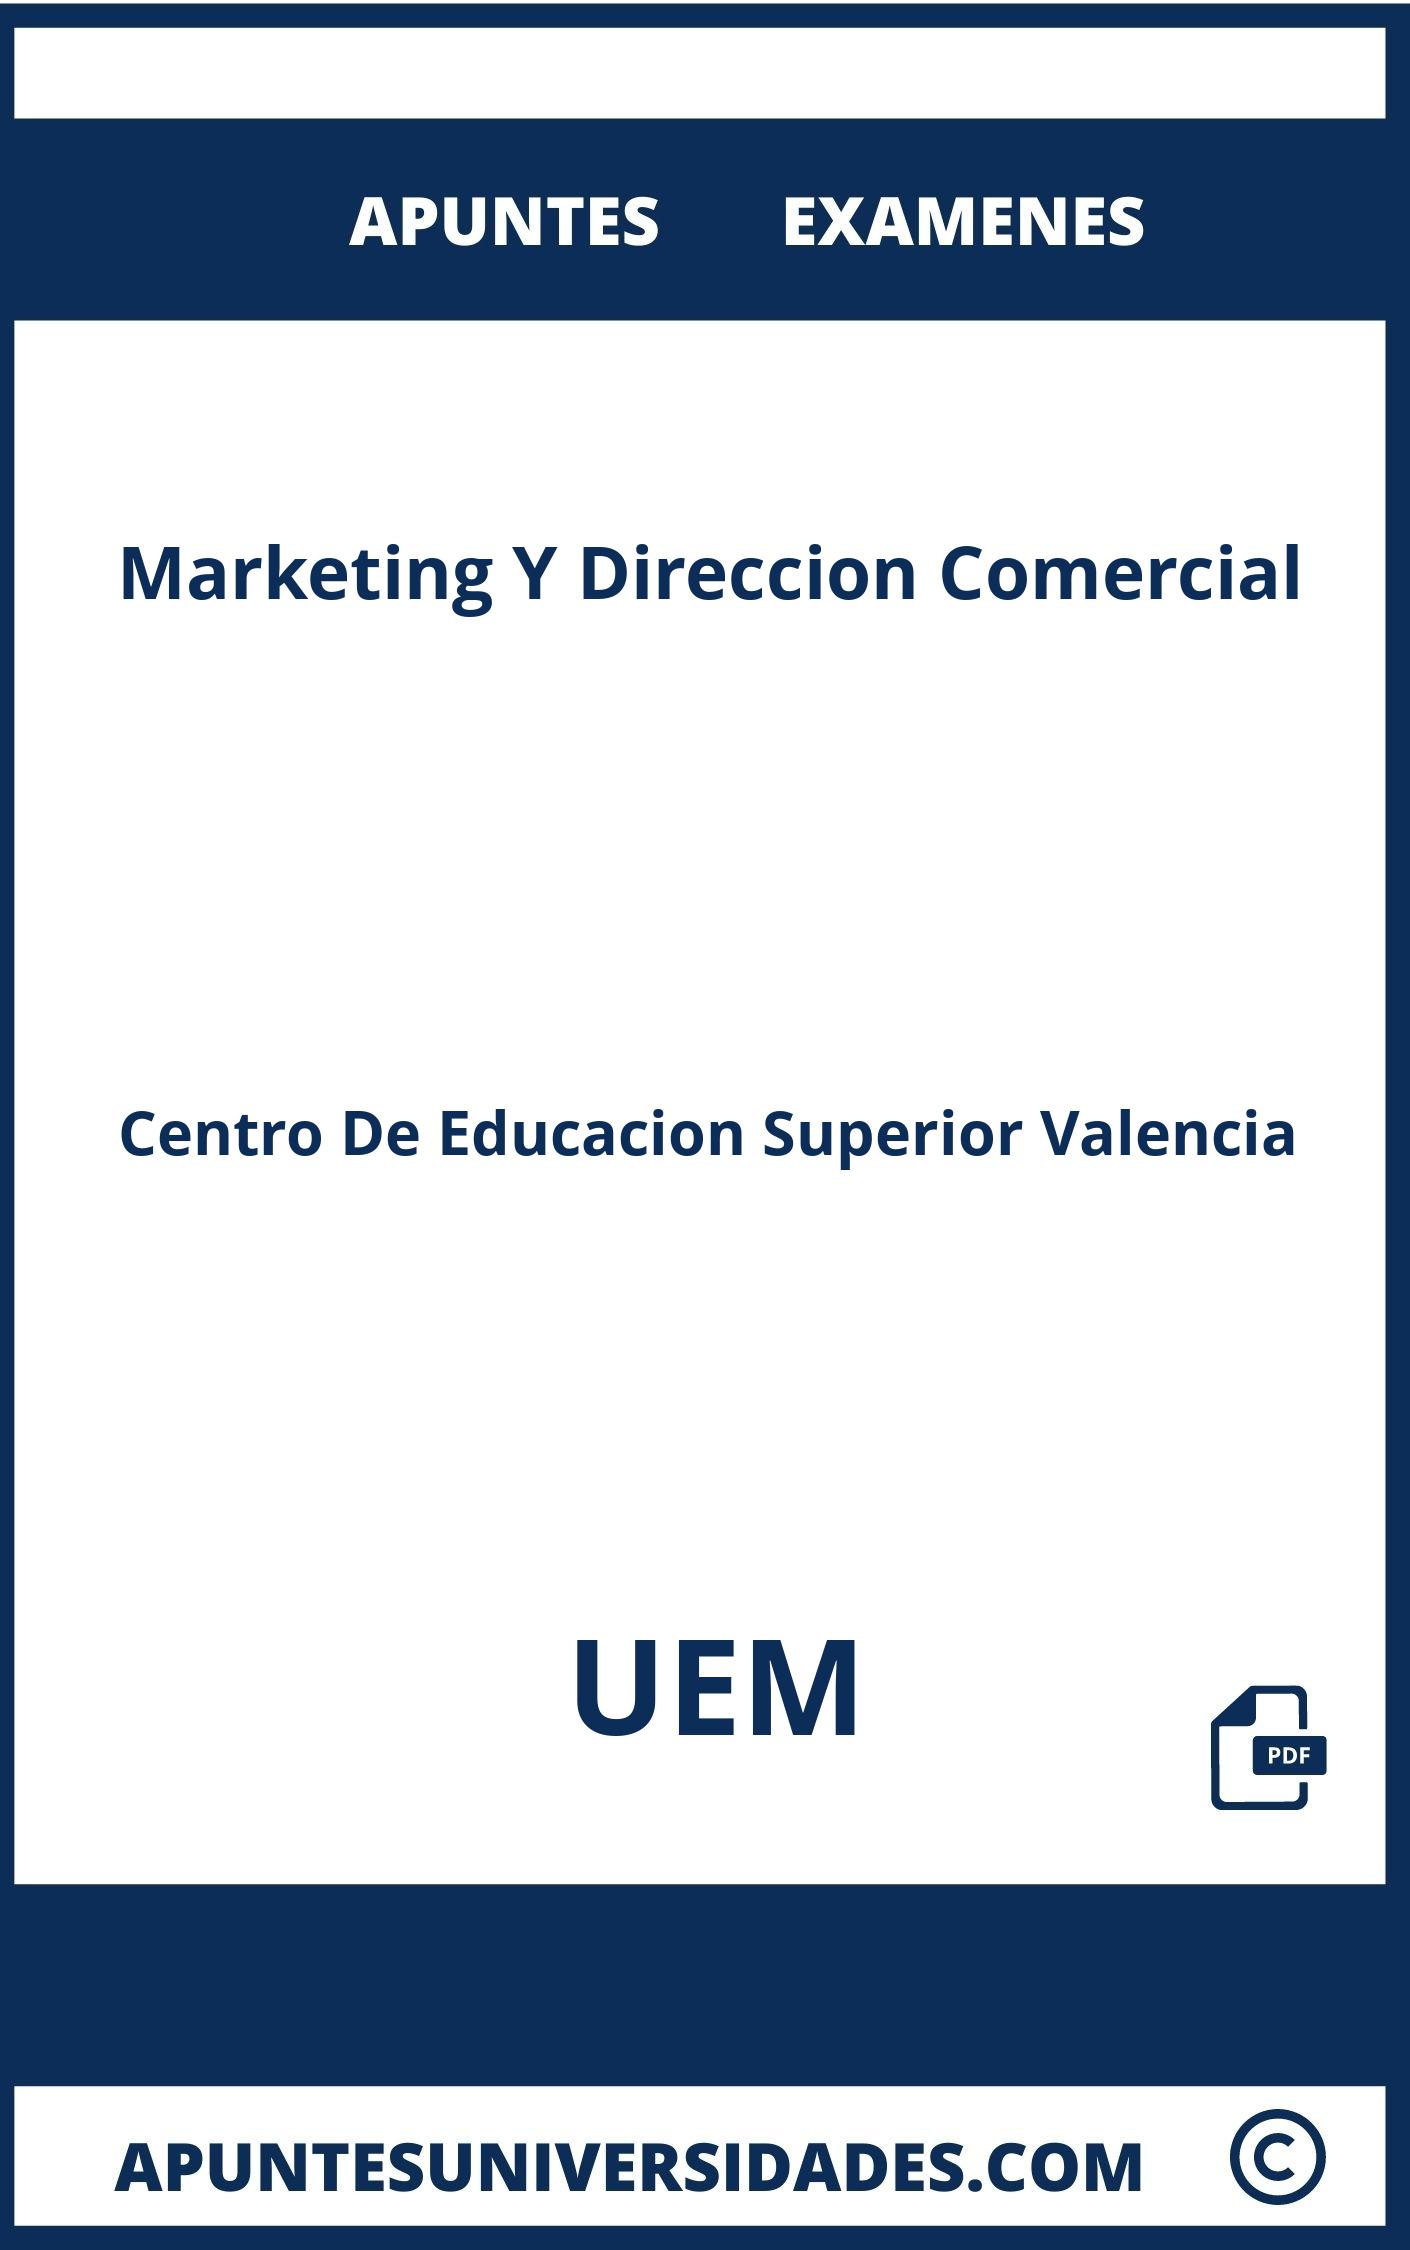 Apuntes y Examenes Marketing Y Direccion Comercial UEM